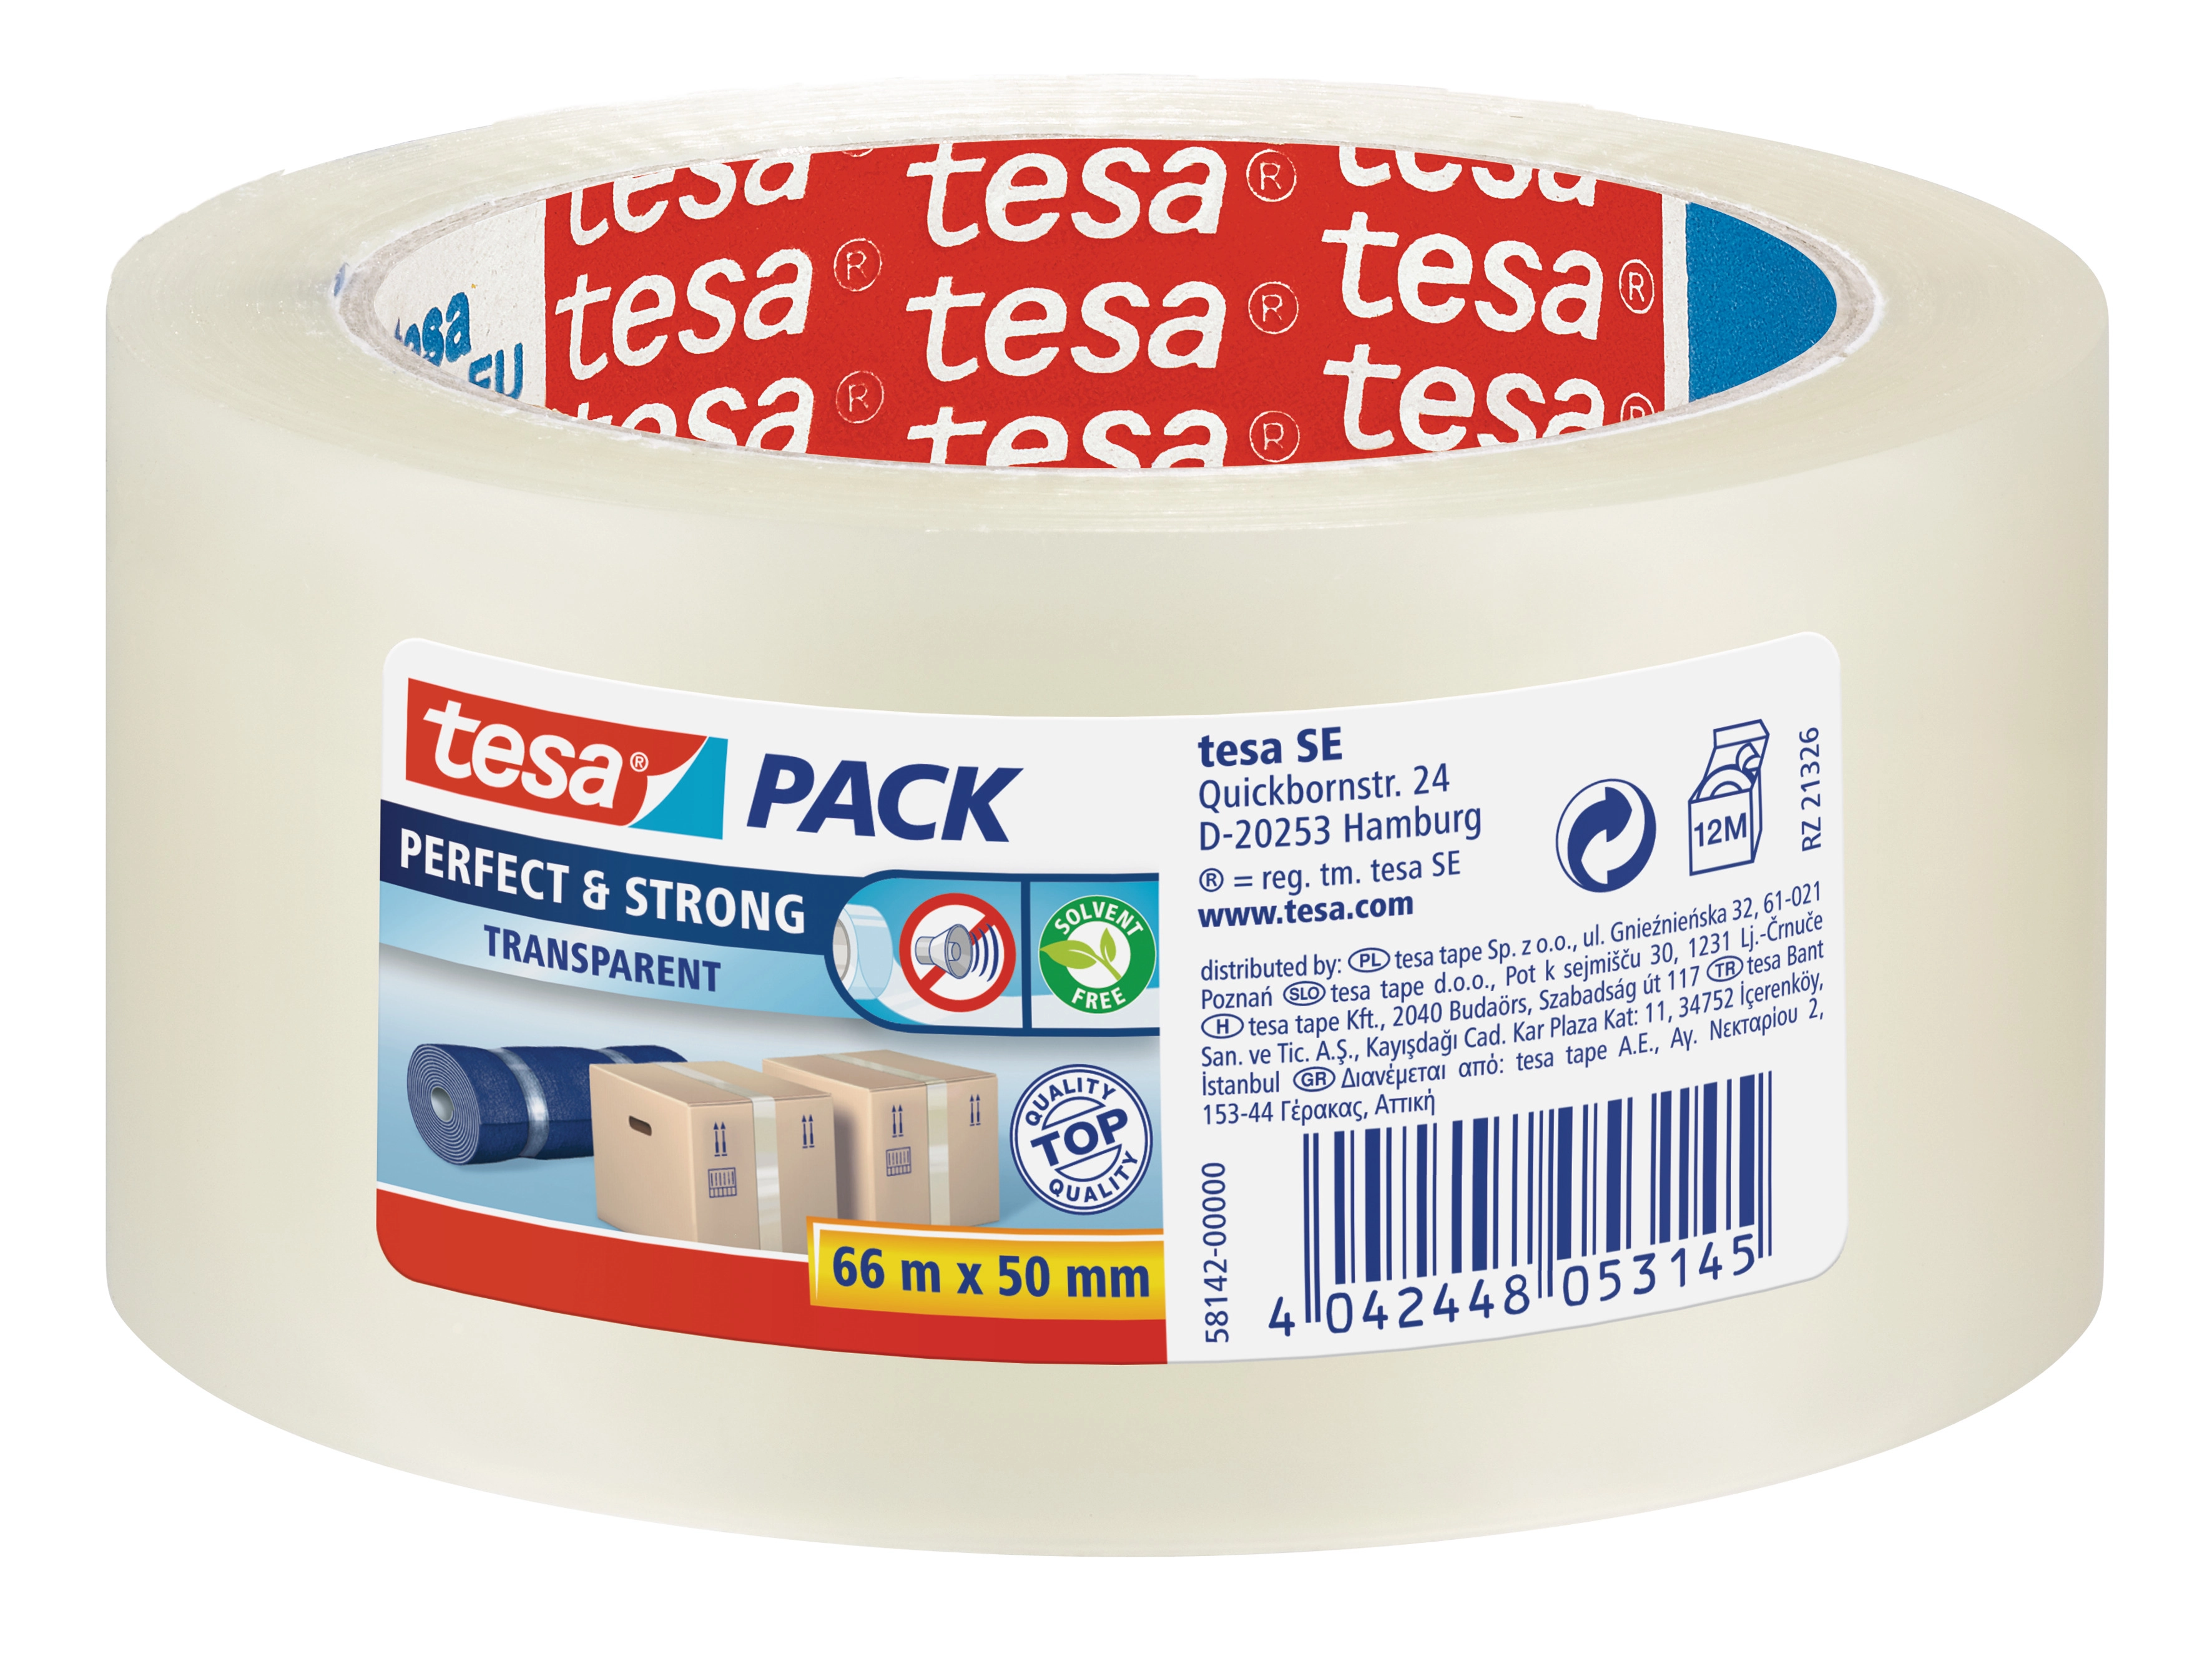 Tesa Pack Perfect & Strong Transparent 66 m x 50 mm kaufen bei OBI